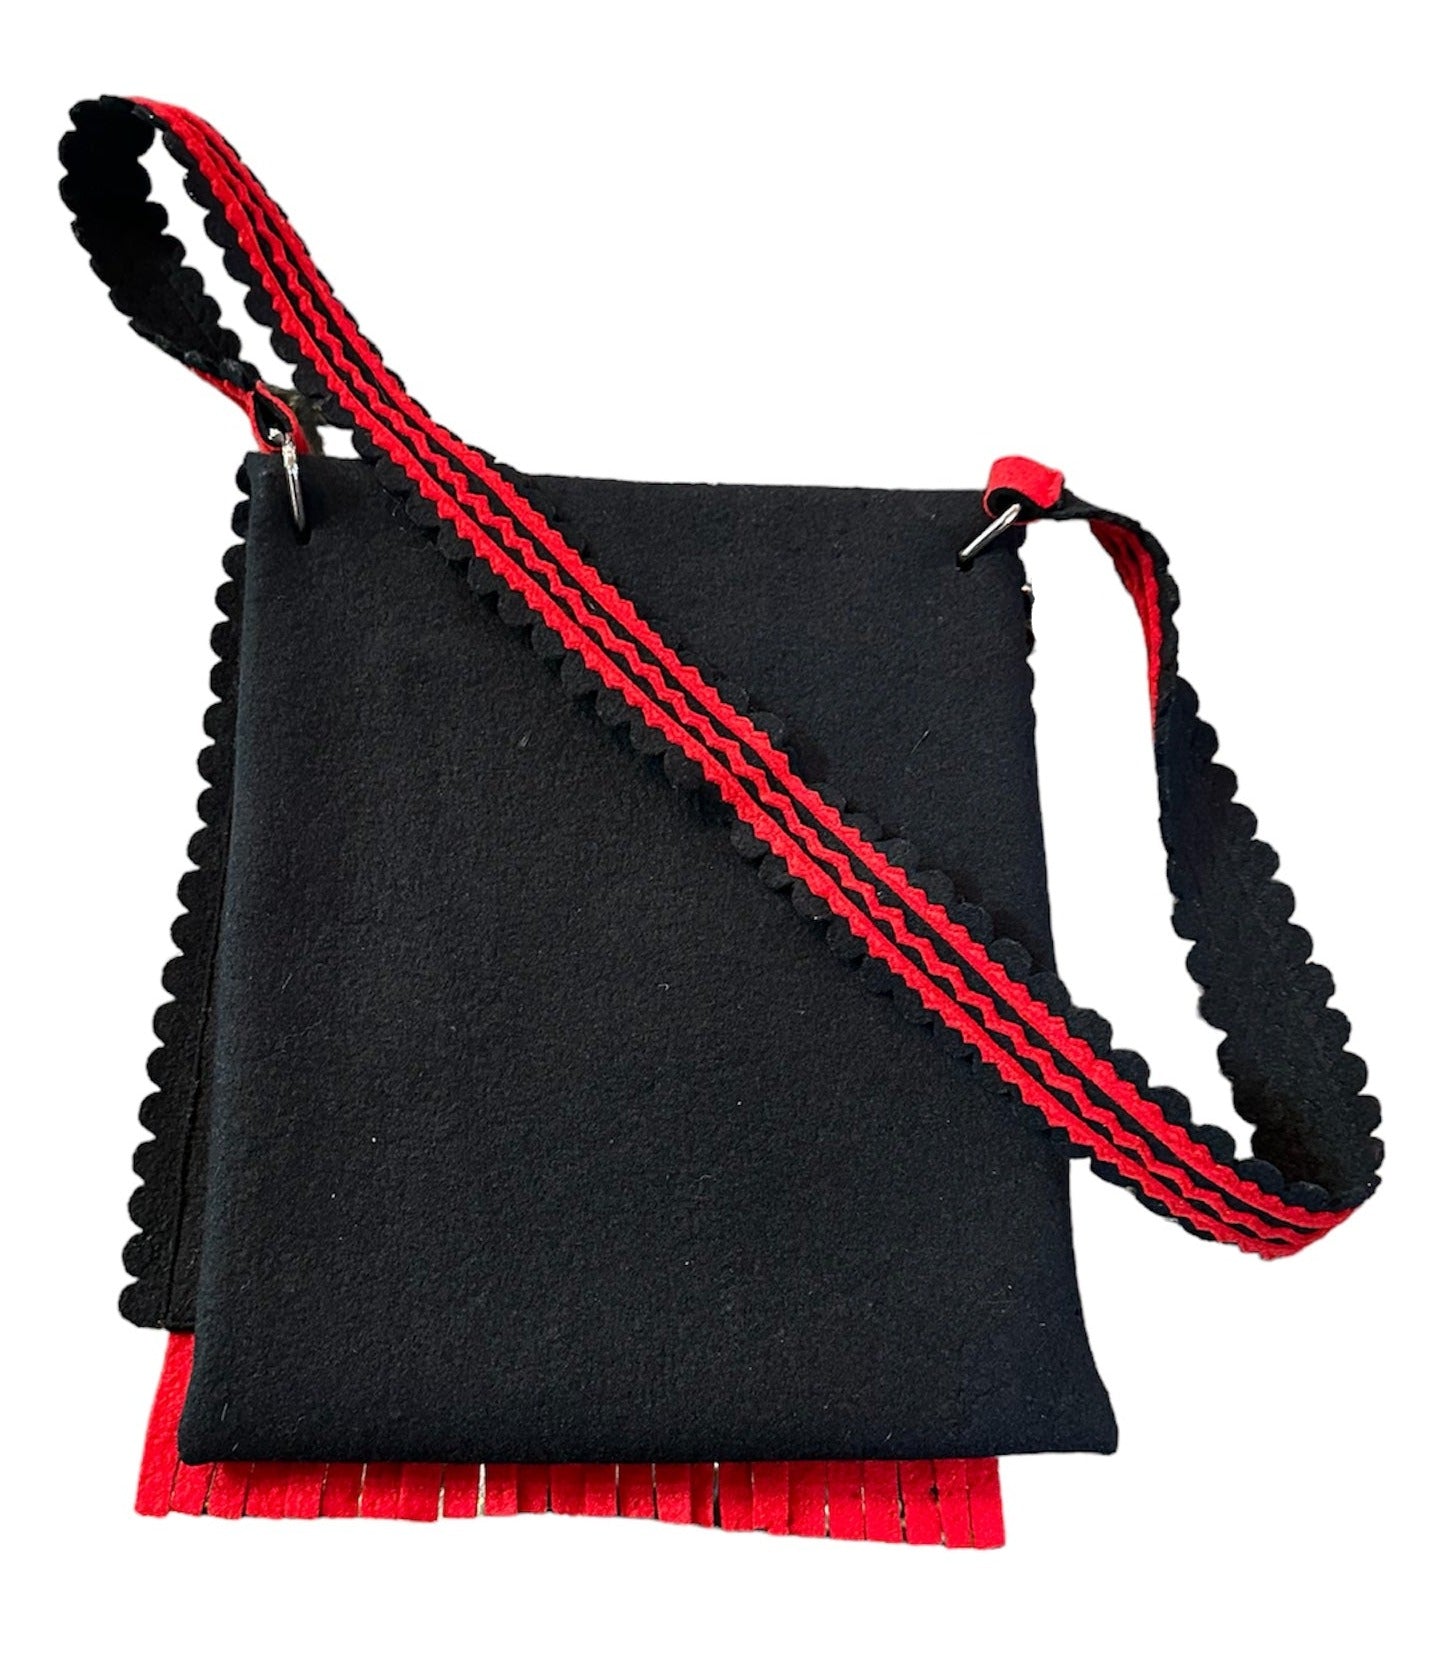 1960s Folkwear Felt Shoulder Bag in Red, White and Black Applique with Fringe BACK 2 of 5